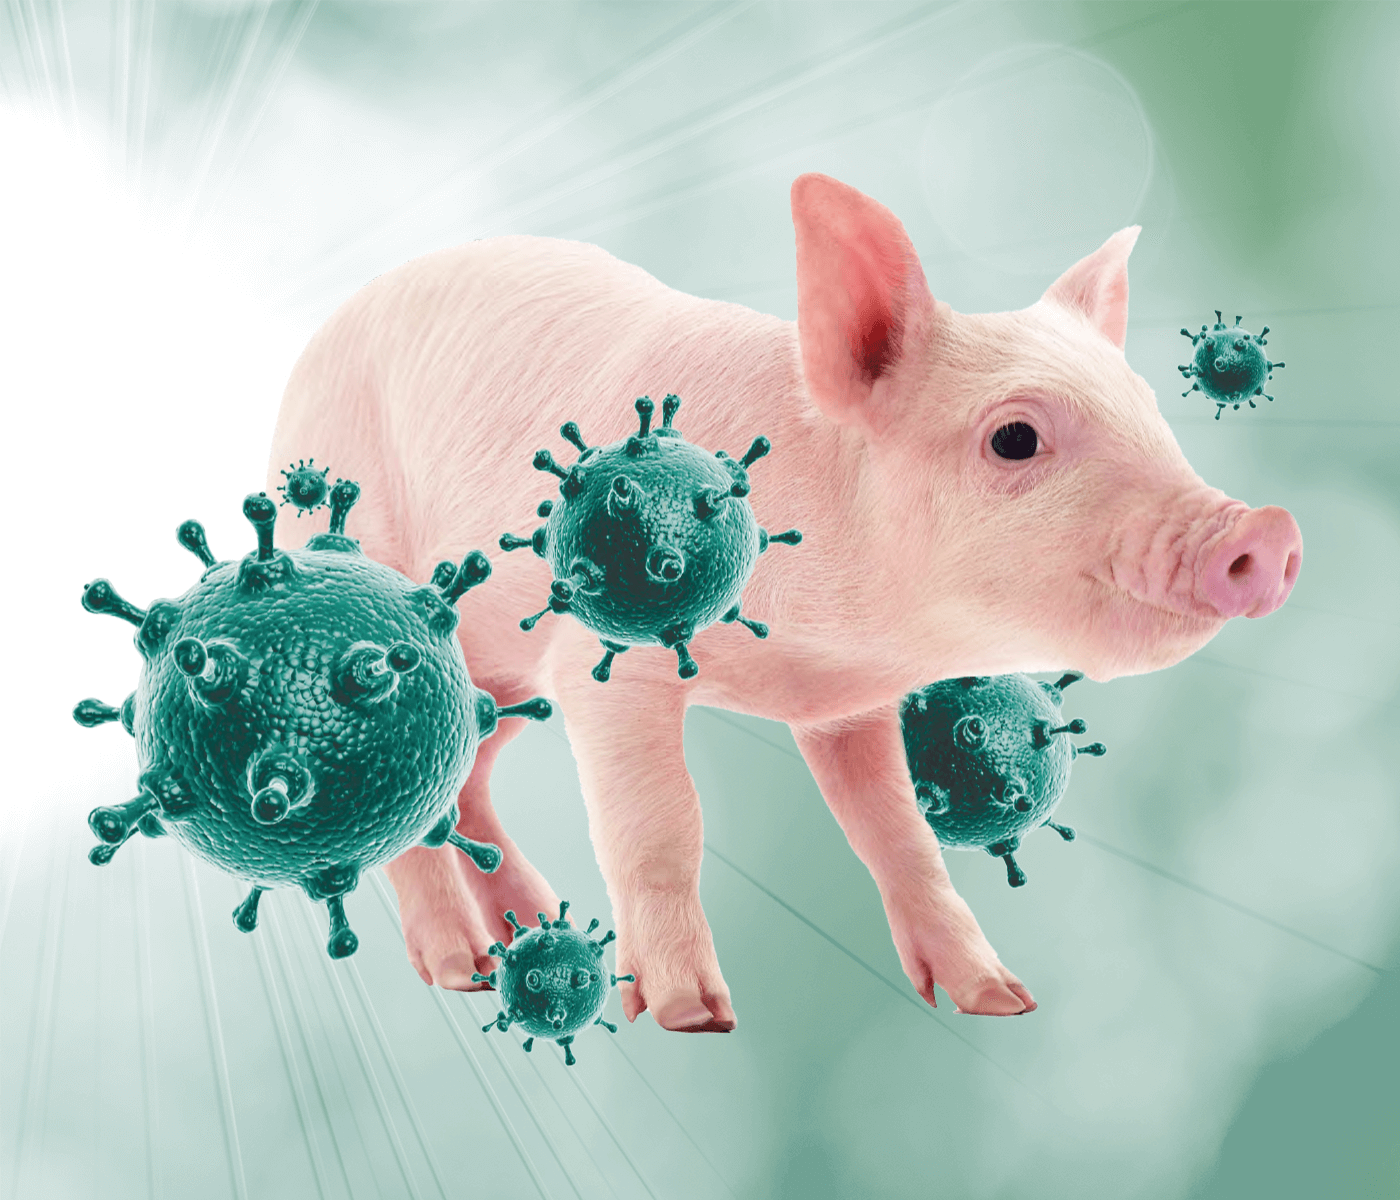 Desenmascarando al linaje pandémico del Virus de la Influenza Porcina en dos granjas con diferente manifestación clínica